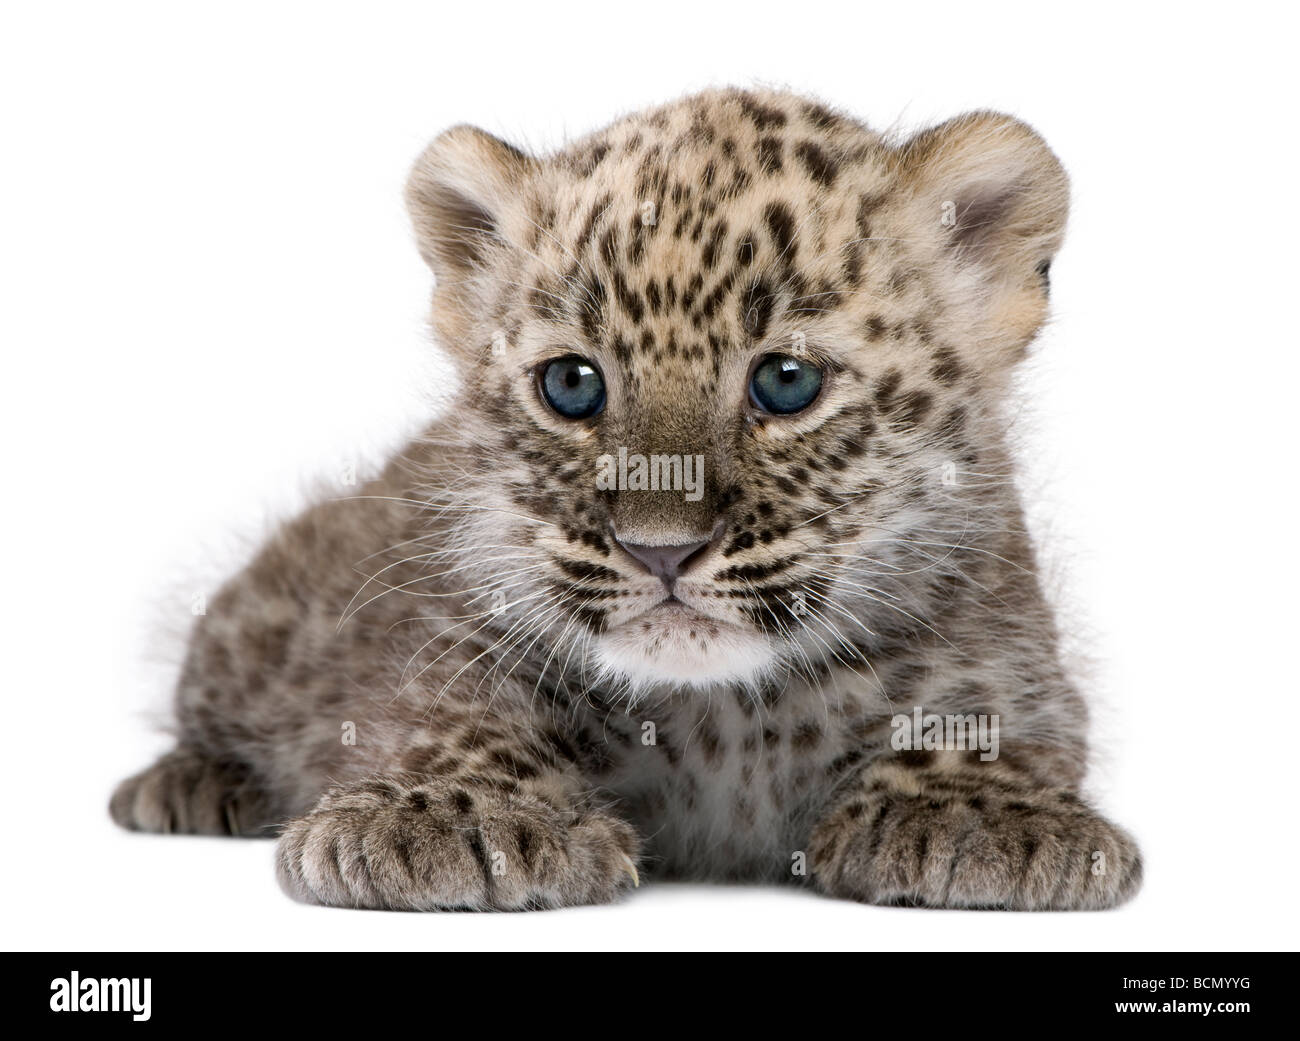 Persian leopard Cub, 6 semaines, devant un fond blanc, studio shot Banque D'Images